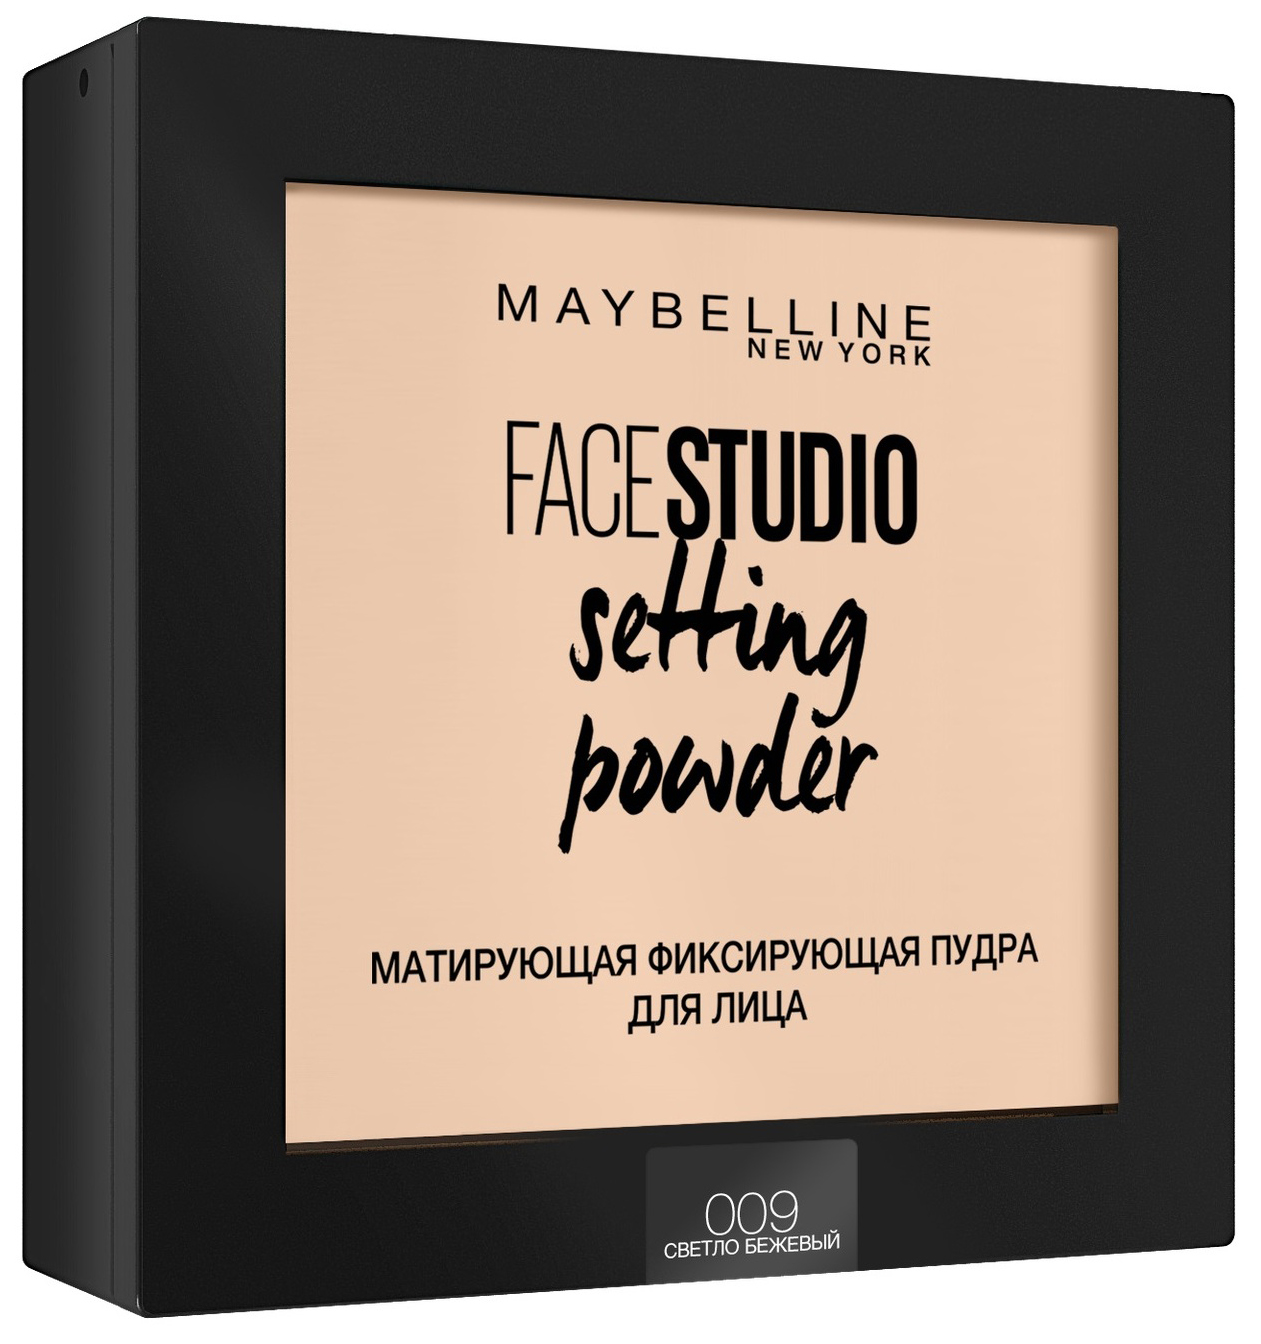 Пудра Maybelline Face Studio Setting Powder 009 Светло-бежевый 9 г хайлайтер maybelline new york face studio shimmer hightlight 003 rose 9 г